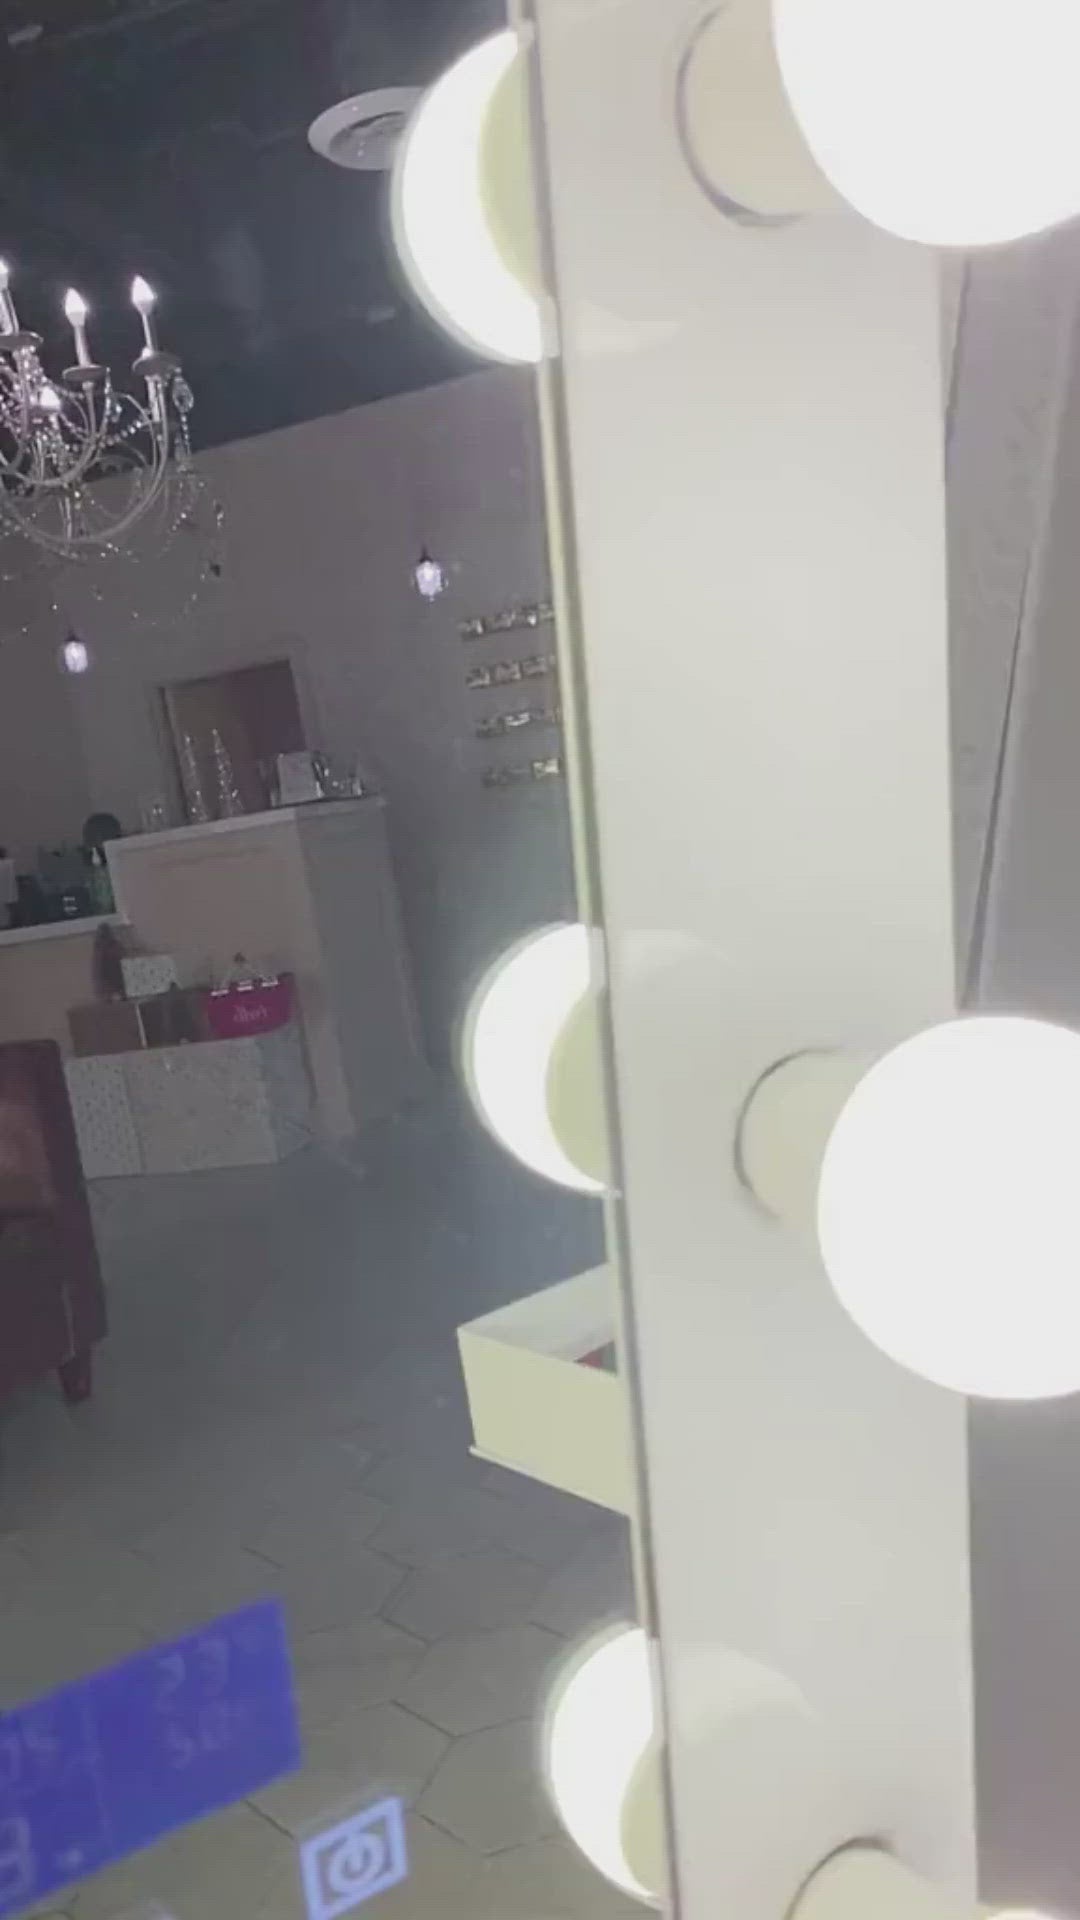 21 Bulb Standing Vanity Mirrors